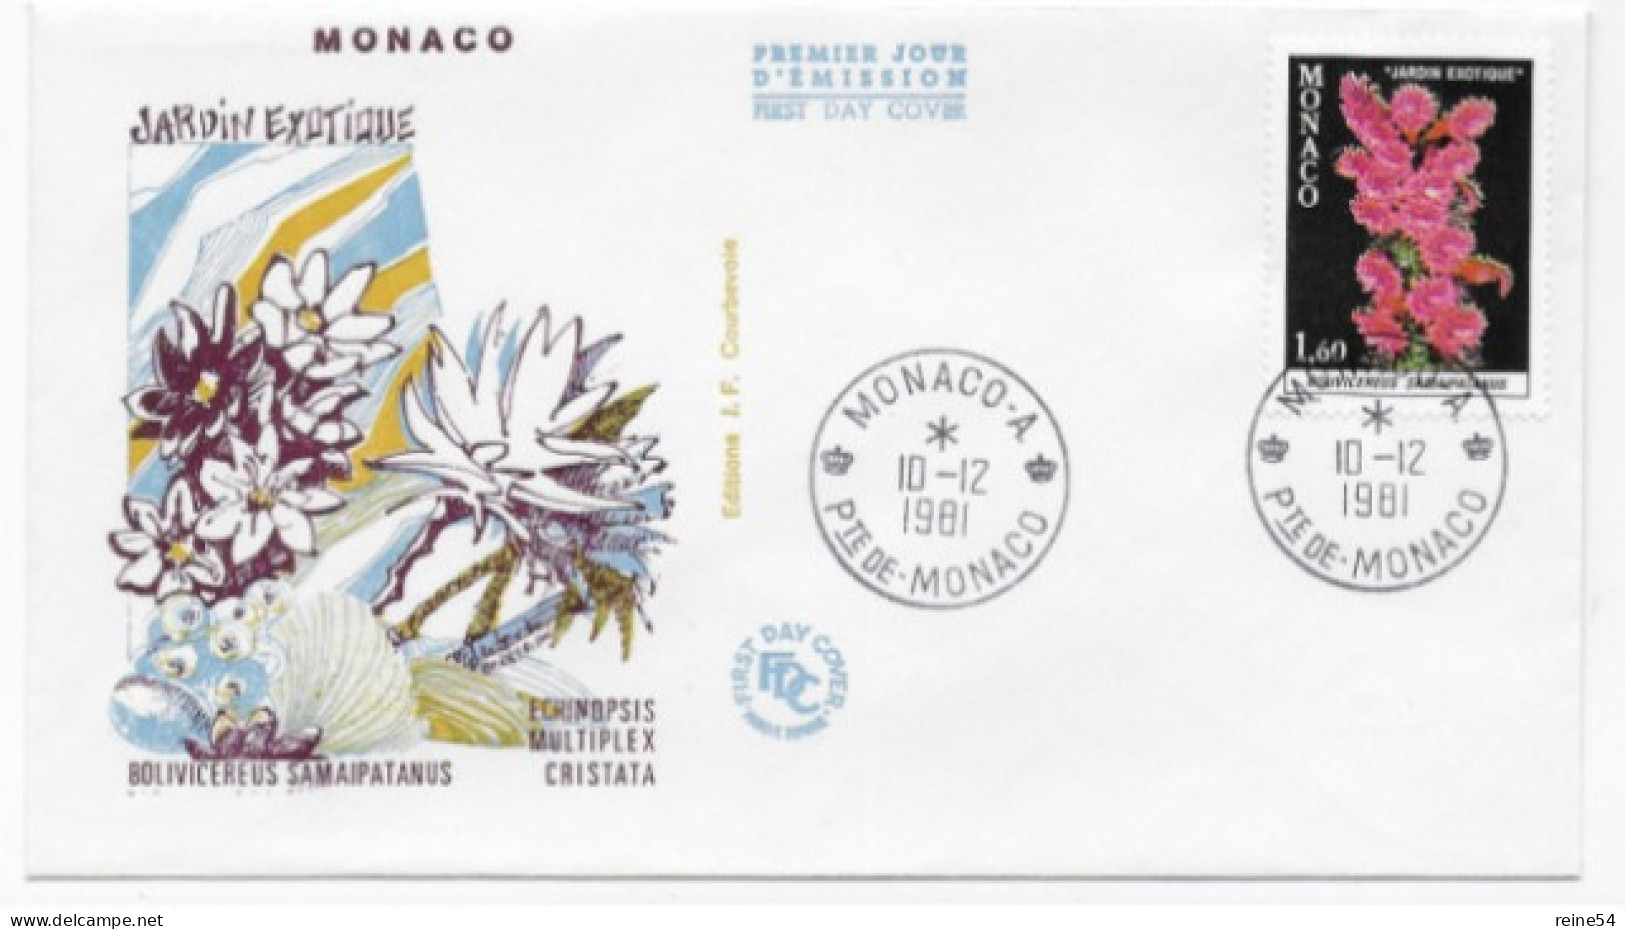 Enveloppe Premier Jour - Jardin Exotique -Bolivicereus Samaipatanus 10-12-1981 Pte De Monaco (fleurs) - Gebraucht